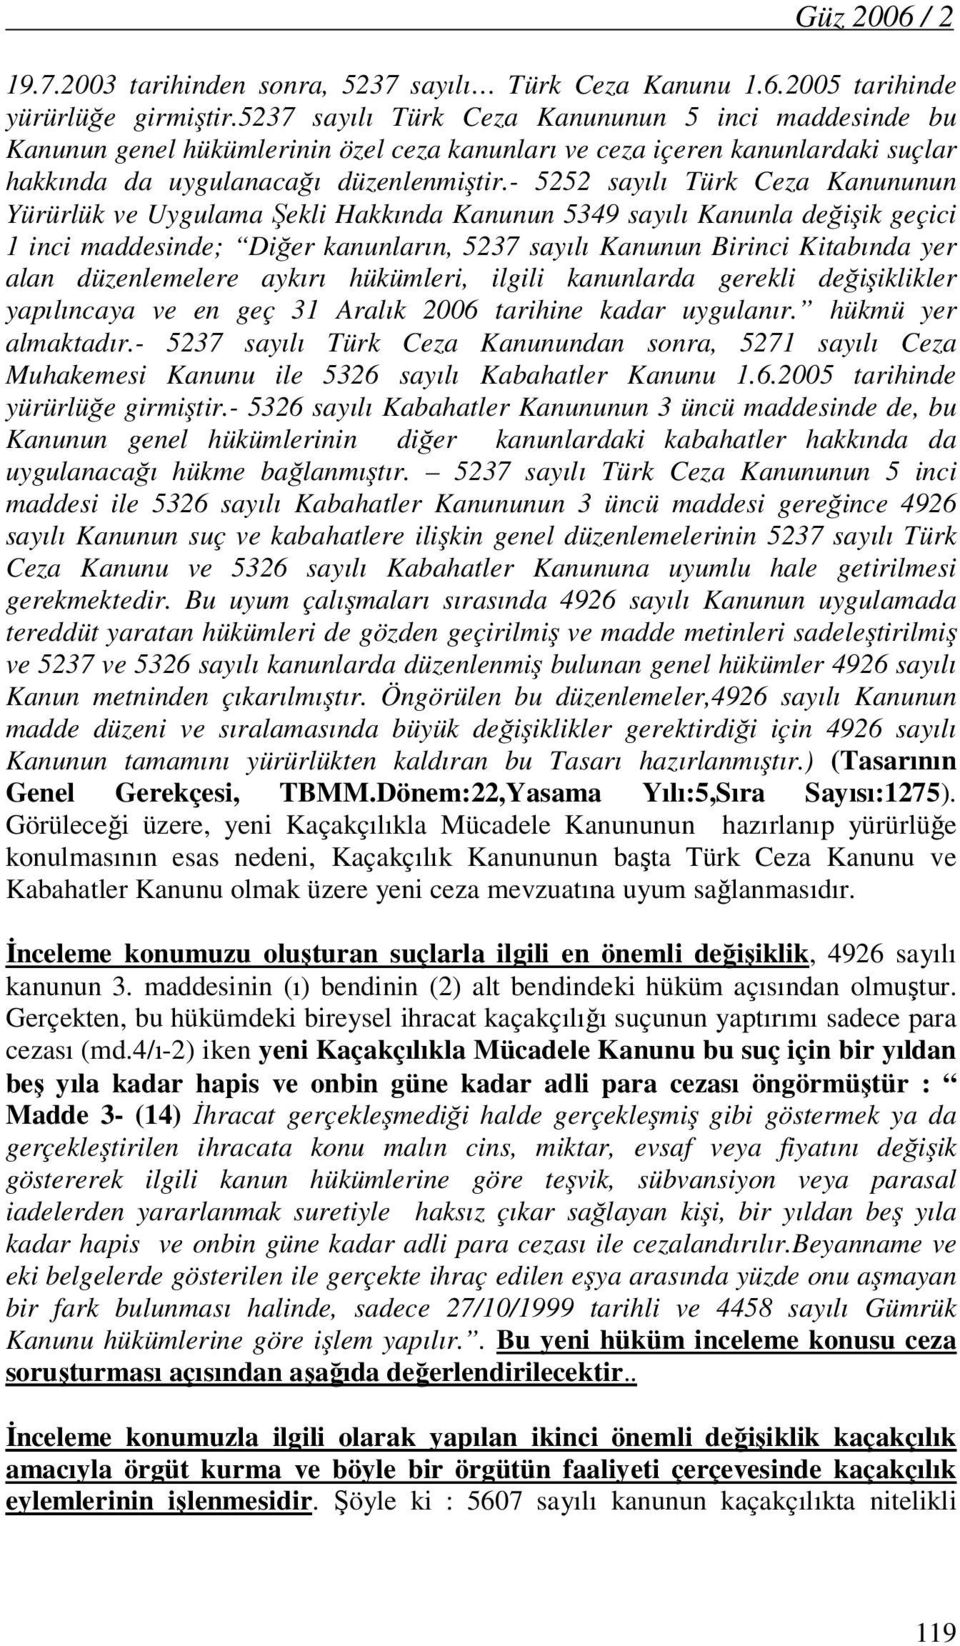 - 5252 sayılı Türk Ceza Kanununun Yürürlük ve Uygulama Şekli Hakkında Kanunun 5349 sayılı Kanunla değişik geçici 1 inci maddesinde; Diğer kanunların, 5237 sayılı Kanunun Birinci Kitabında yer alan